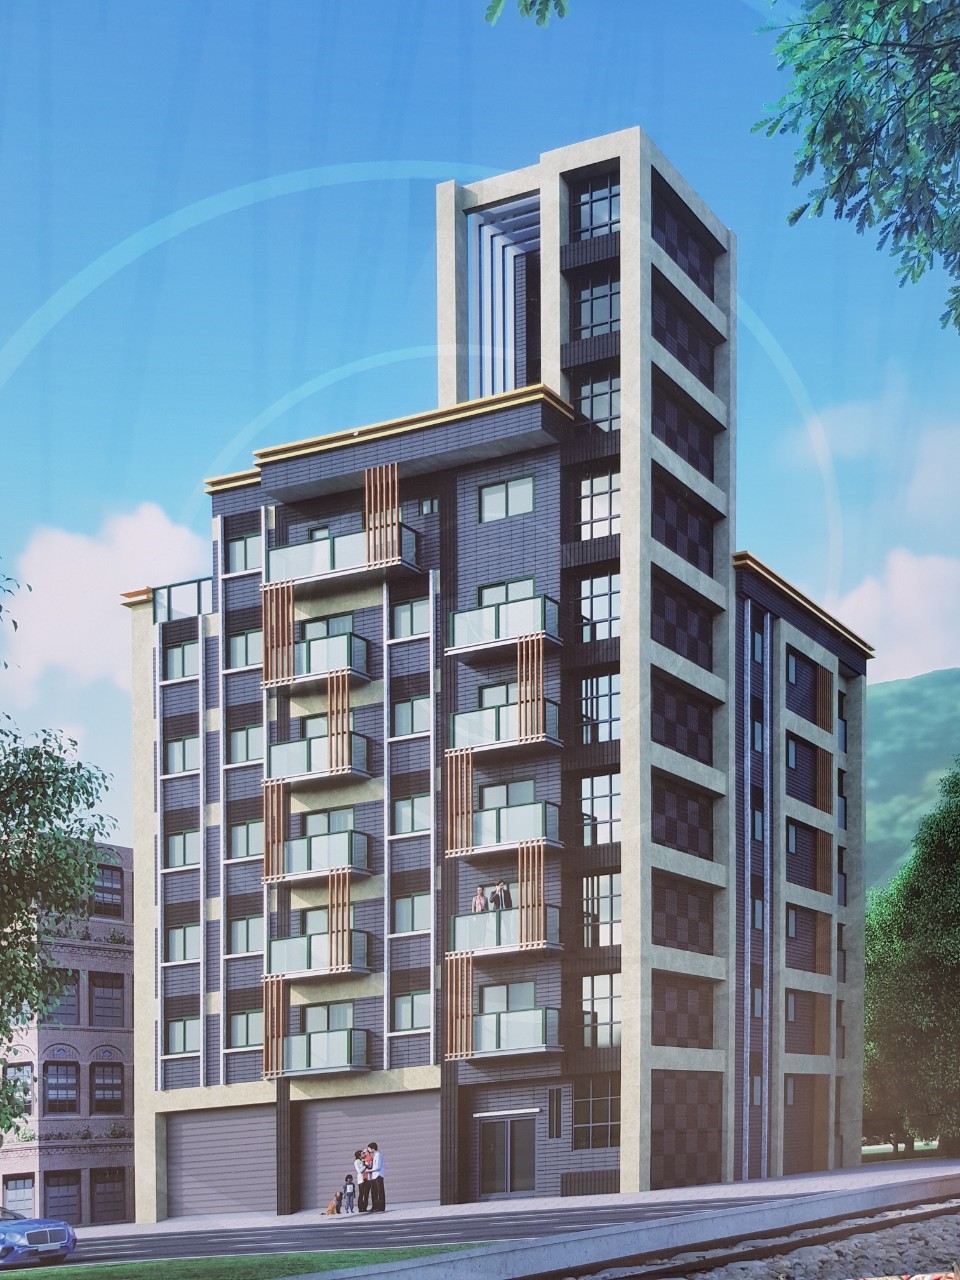 鶯歌陶瓷段危老重建案完成後將成為7層樓14戶的集合住宅